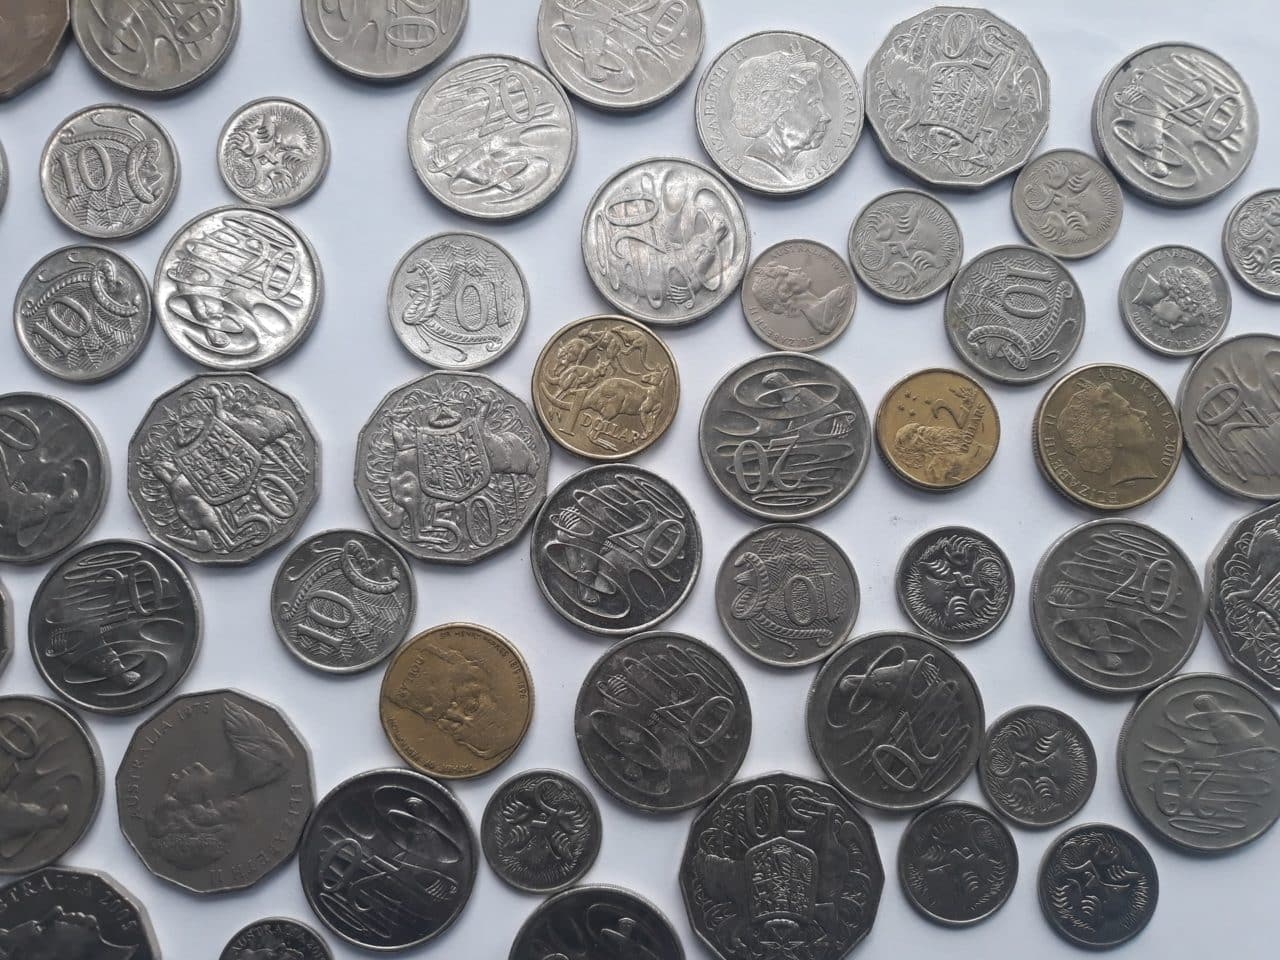 אוסף של מטבעות - להמחשת ביטוחים וכספים כפולים